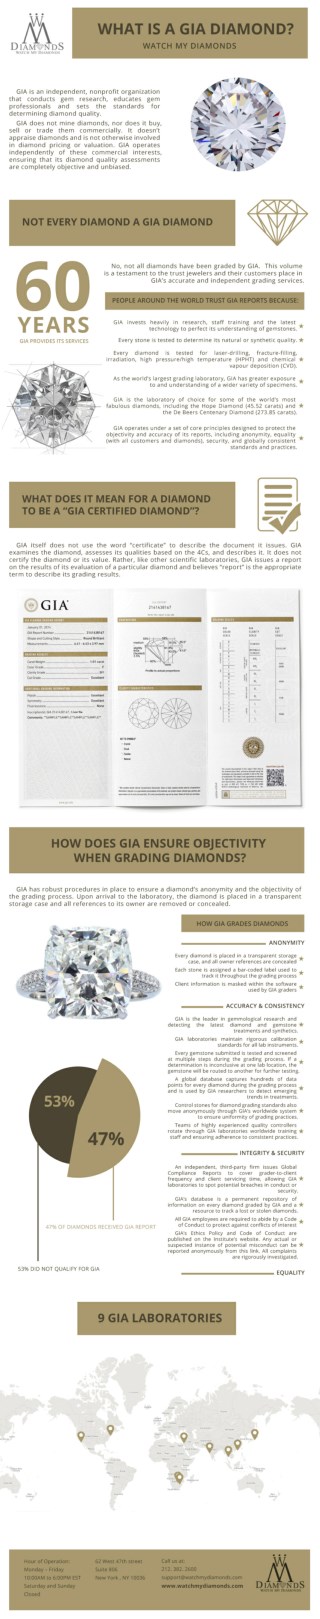 What Is a GIA Diamond?